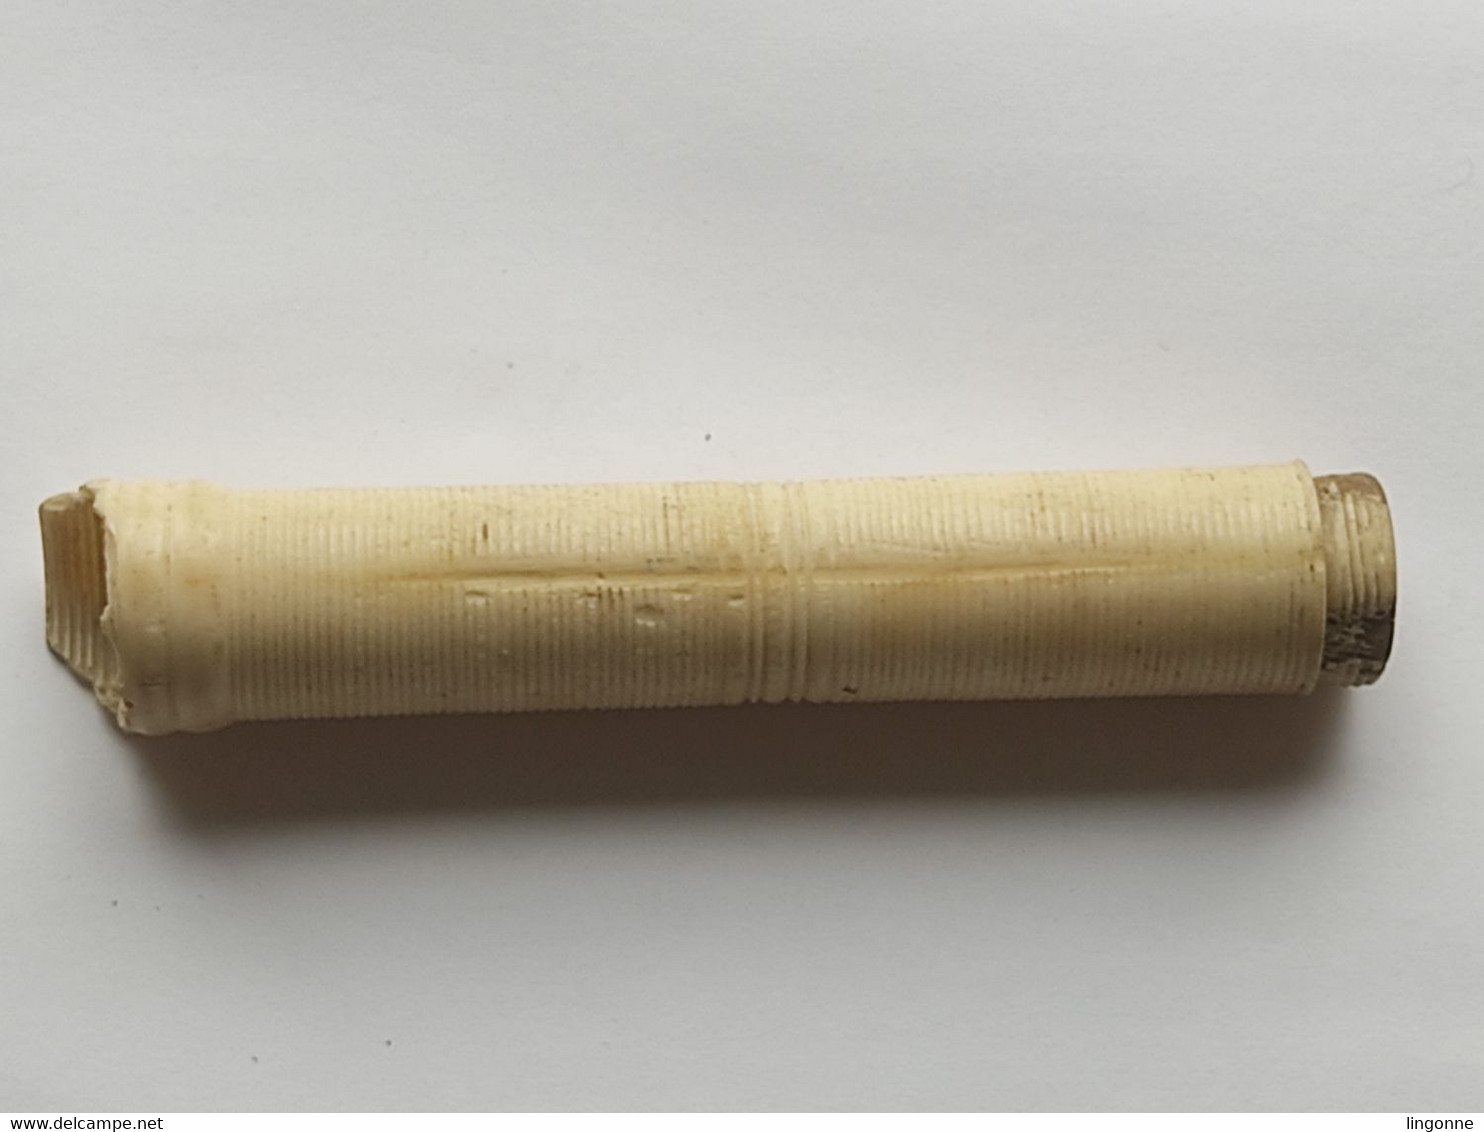 ANCIEN ACCESSOIRE En OS Sculpté, DE CANNE OMBRELLE PARAPLUIE EPOQUE FIN 19ème SIECLE  Long 11,70 Cm Env - Regenschirme